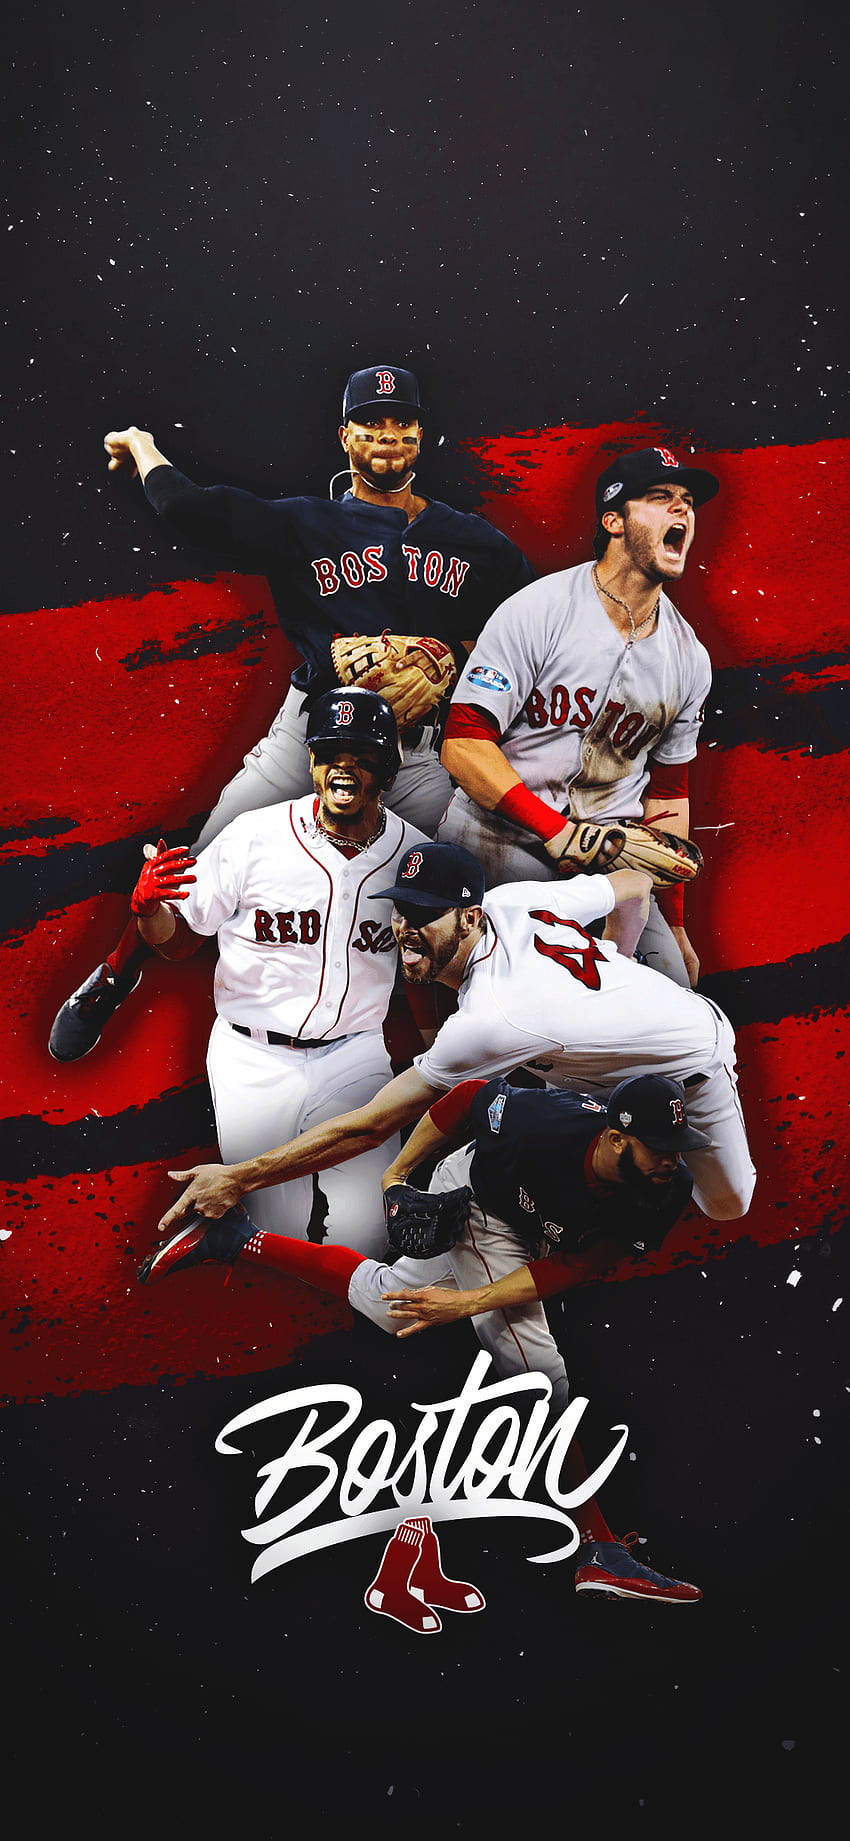 Medias Rojas de Boston 2019 fondo de pantalla del teléfono